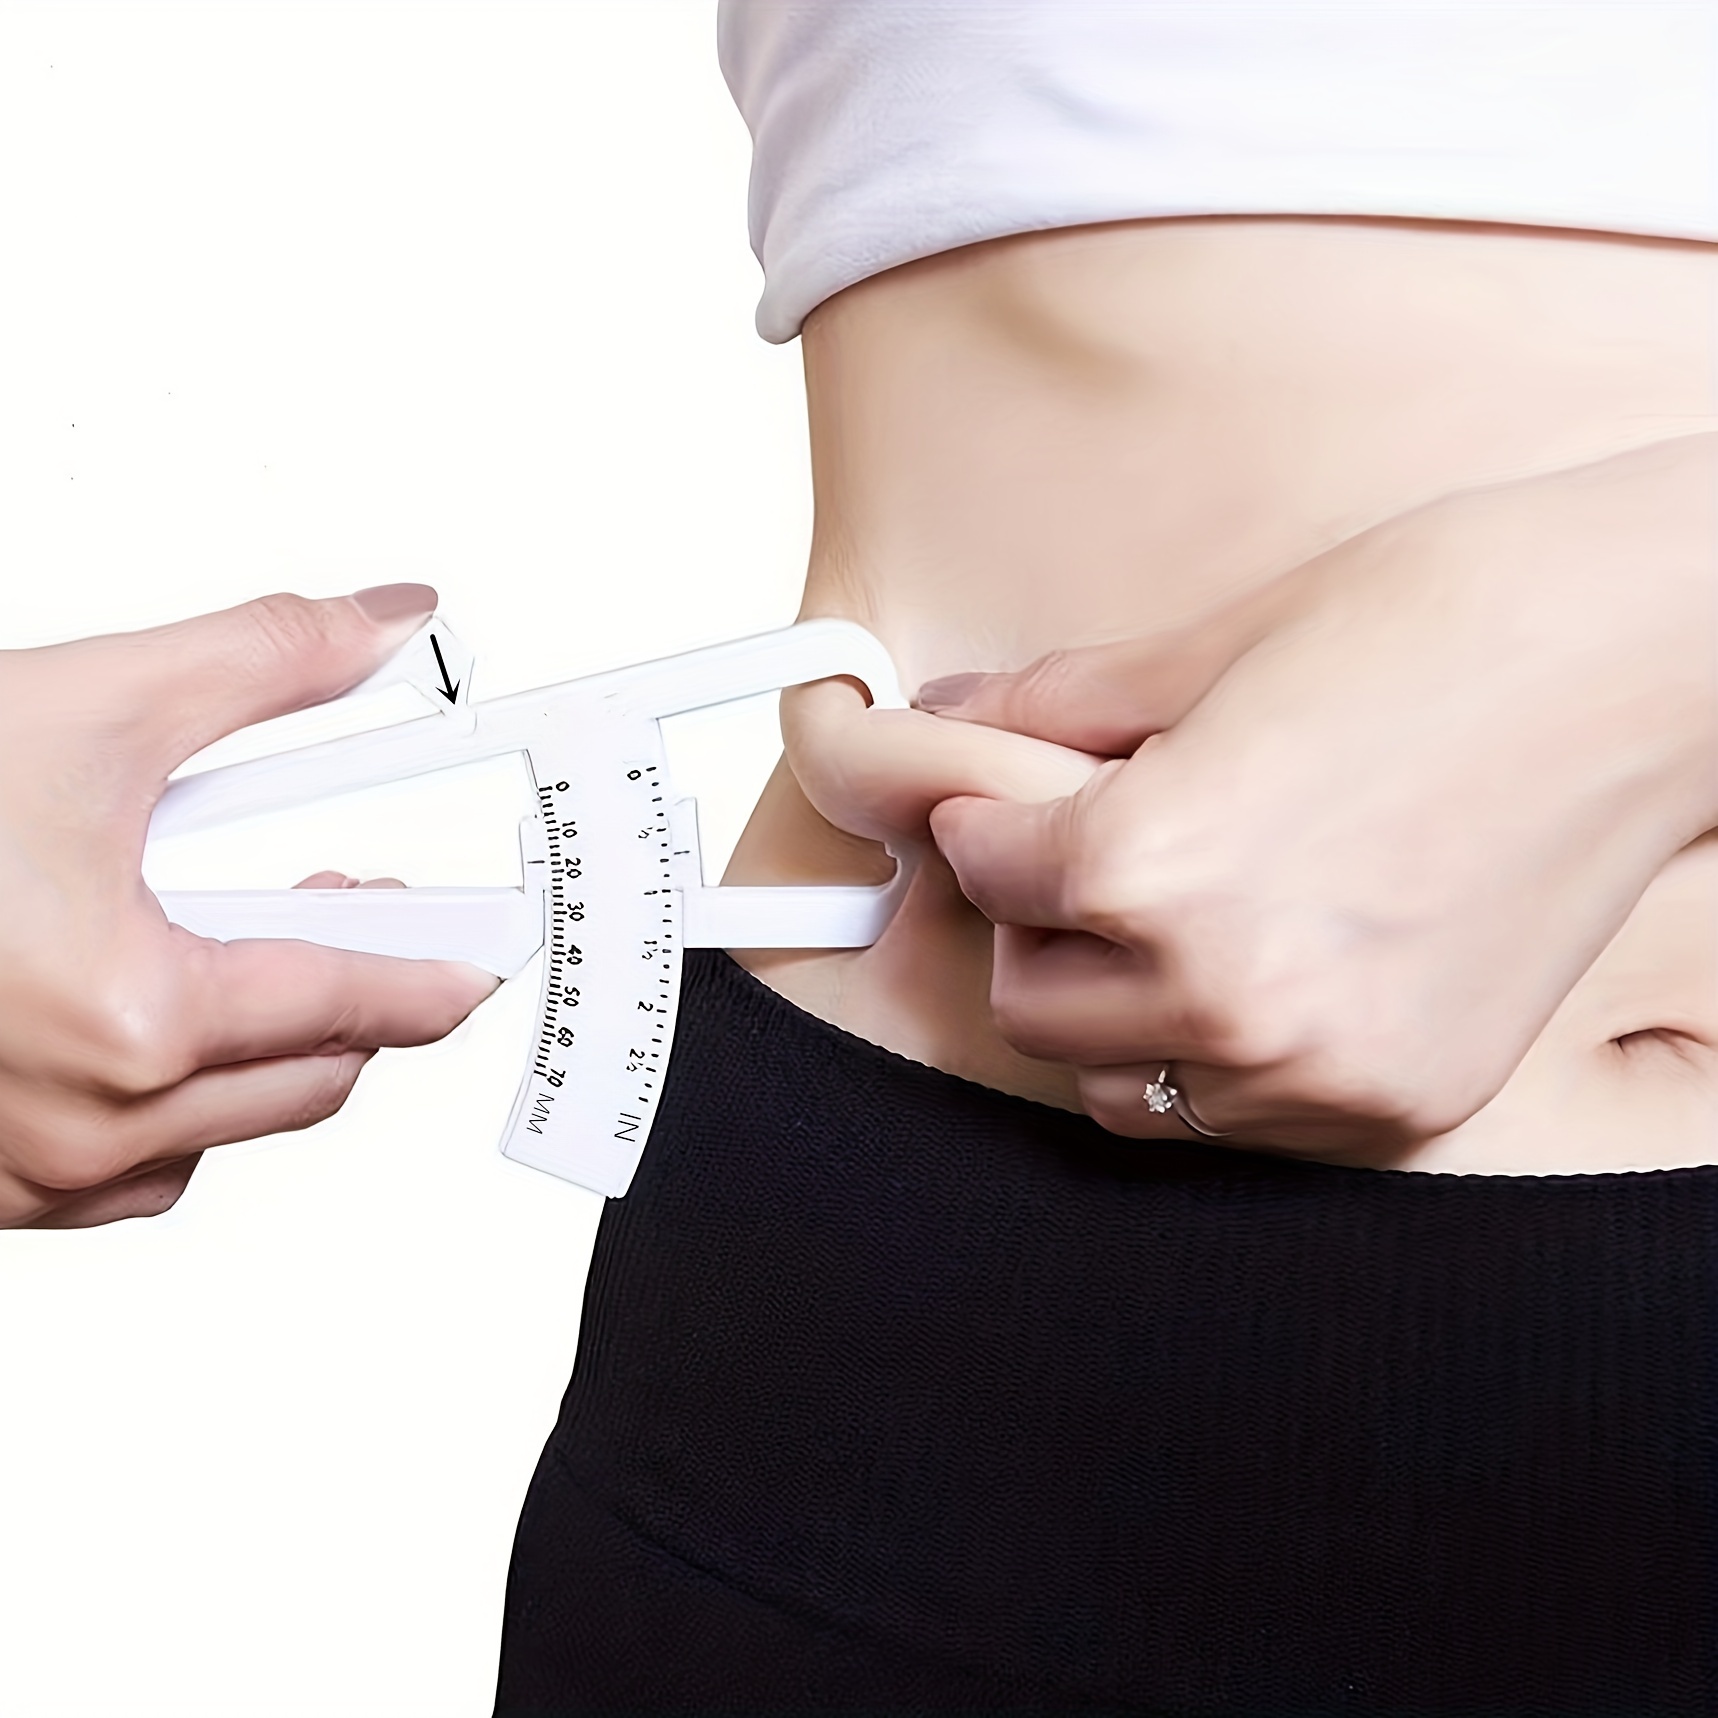 Body Fat Caliper Fat Measure Clipper Combo with Body Fat